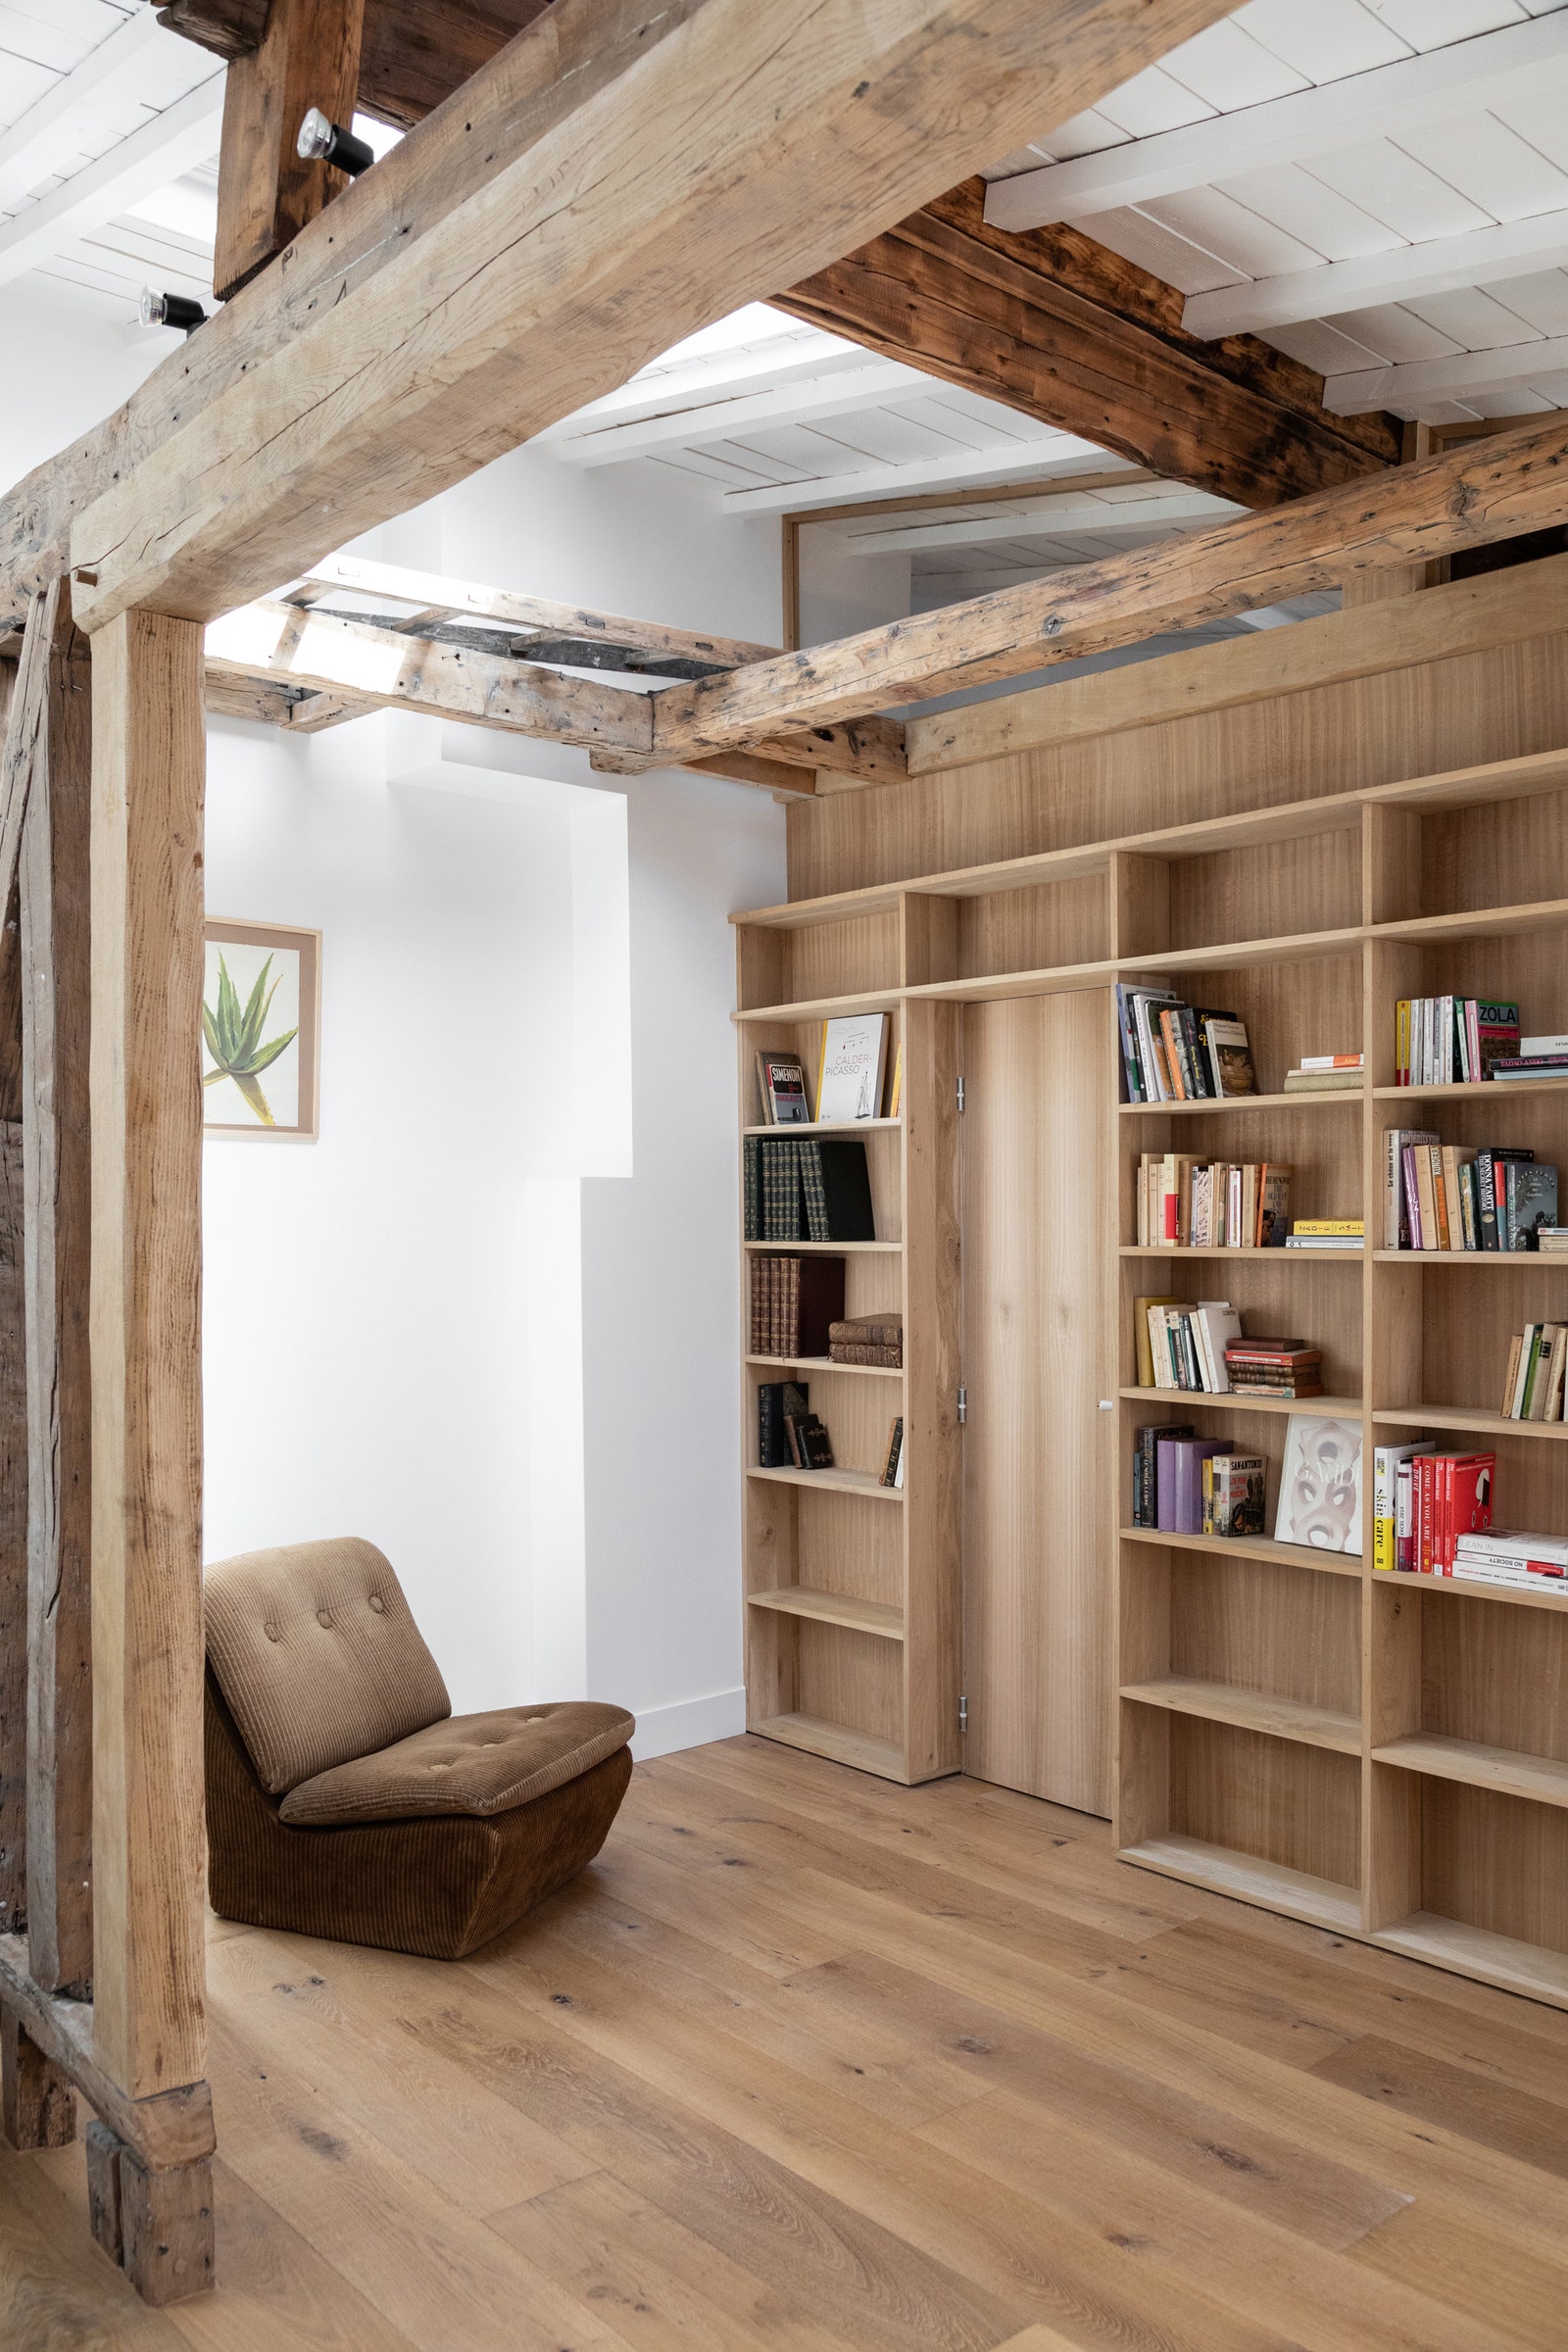 L'image peut contenir des meubles en bois bibliothèque étagère en bois dur chaise design d'intérieur et intérieur